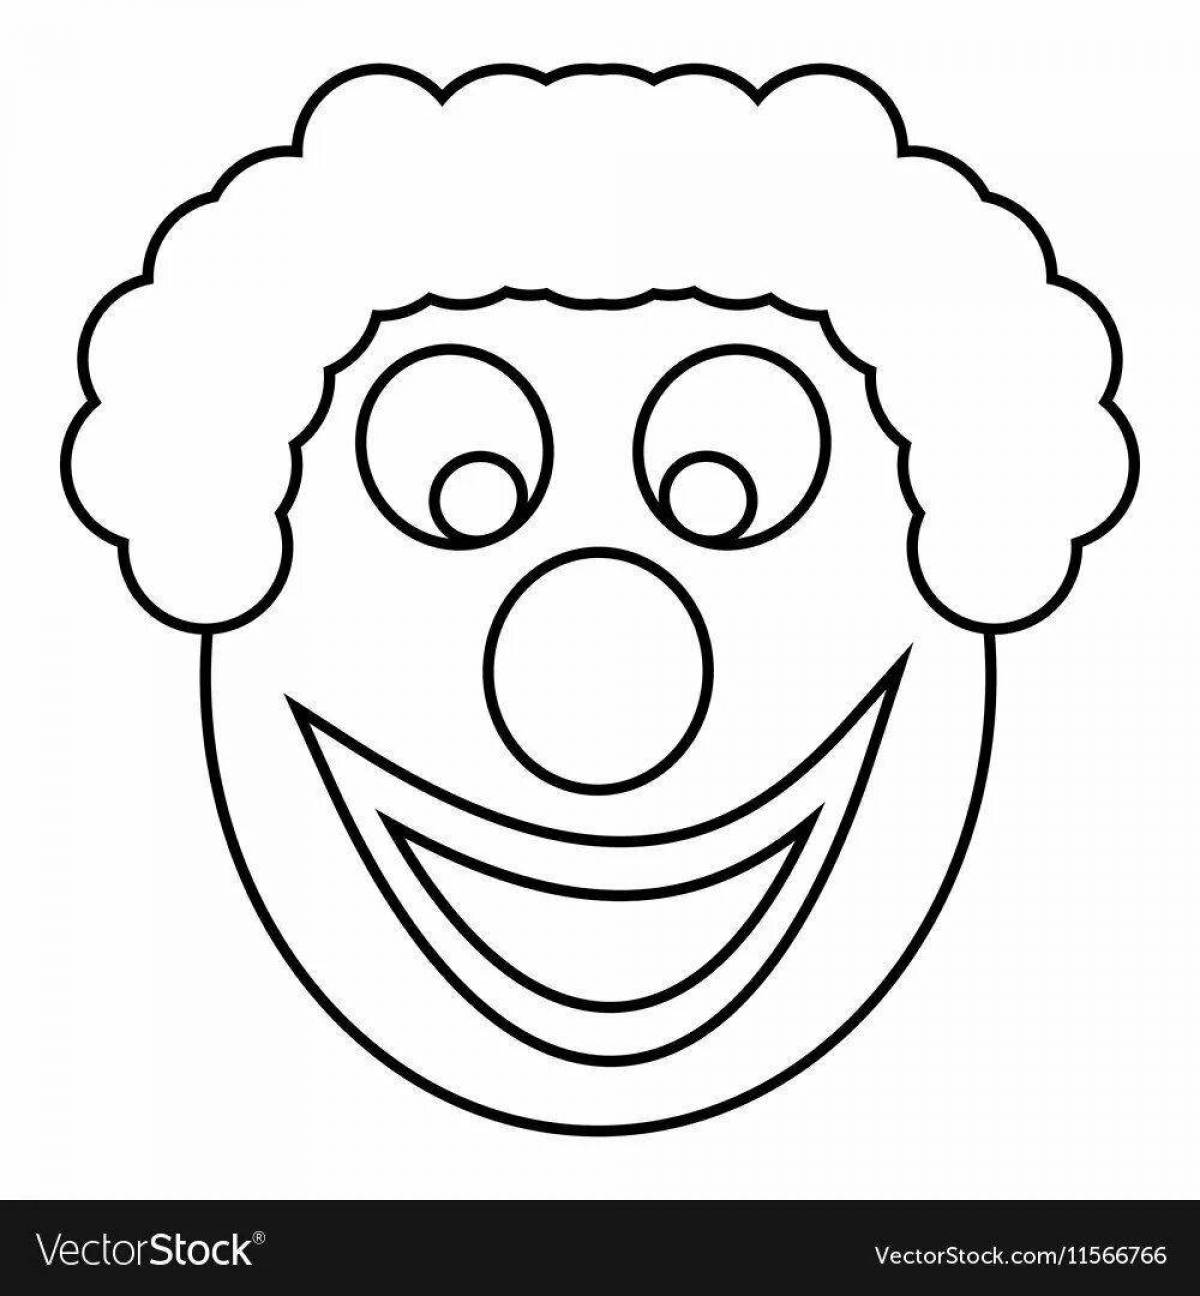 Coloring page happy clown head